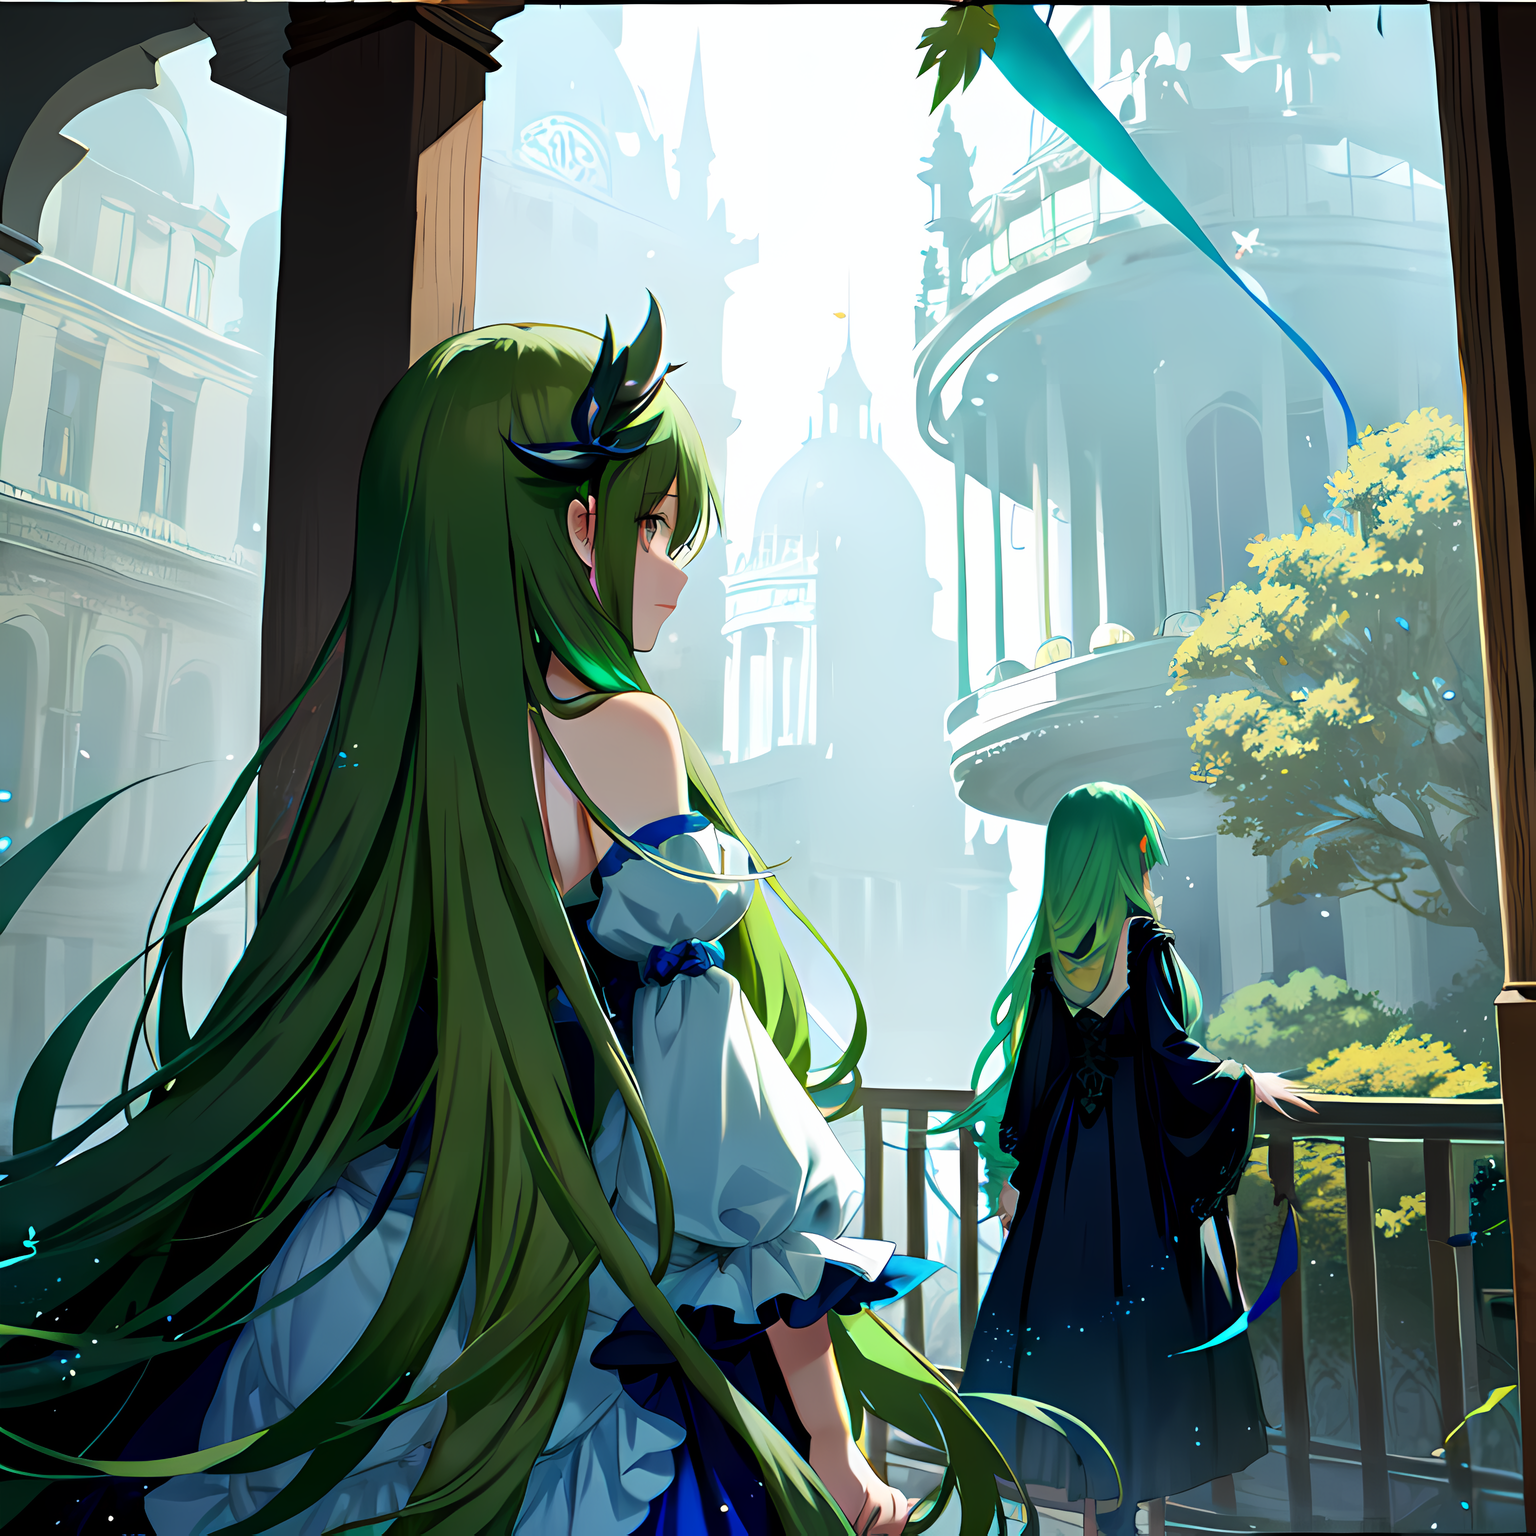 绿发少女，穿插着建筑的长发公主